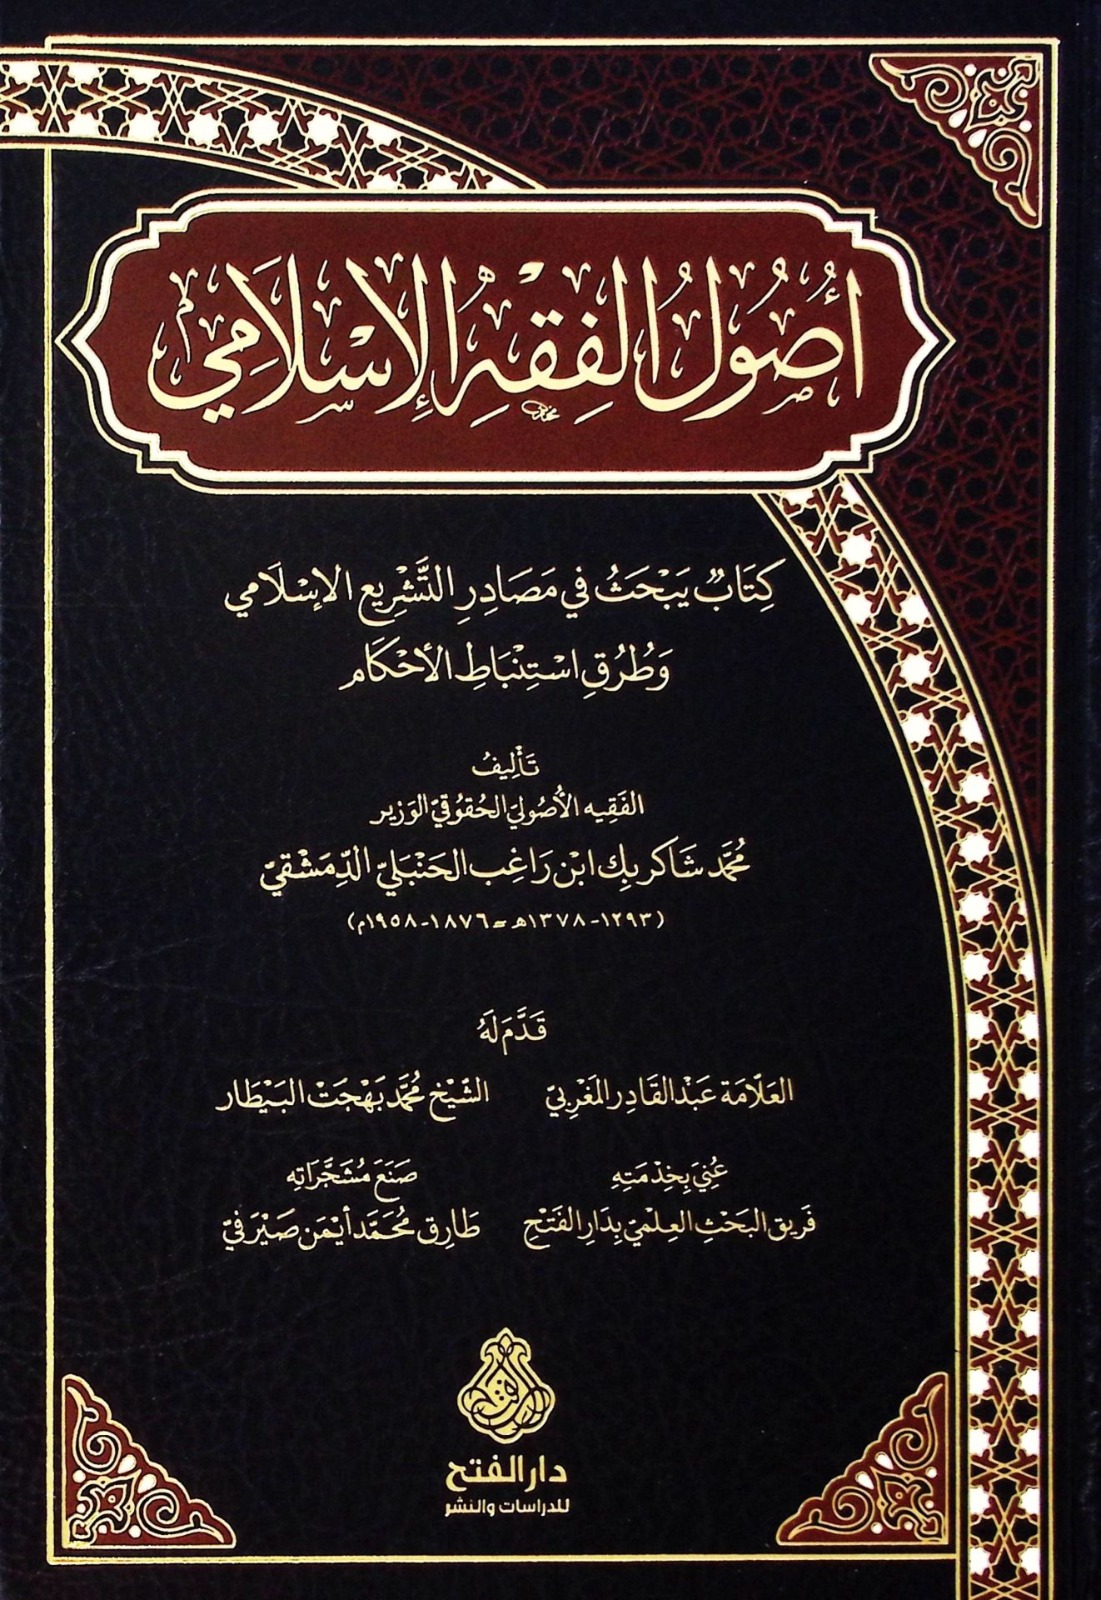 أصول الفقه الإسلامي كتاب يبحث في مصادر التشريع الإسلامي وطرق استنباط الأحكام